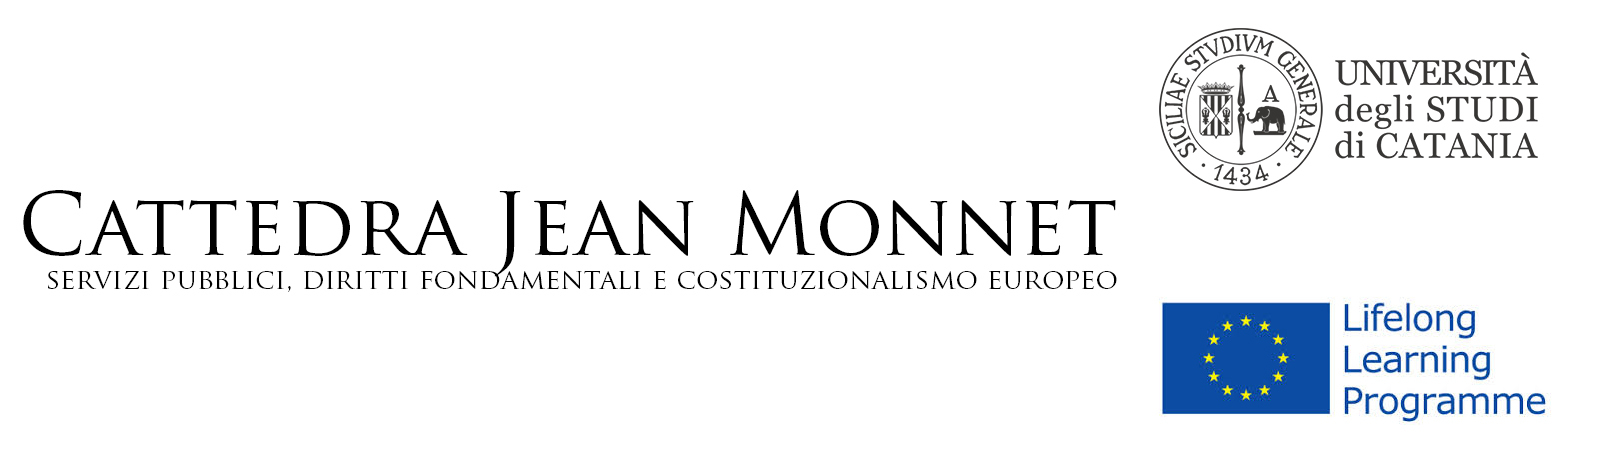 Cattedra Jean Monnet – Jean Monnet Chair